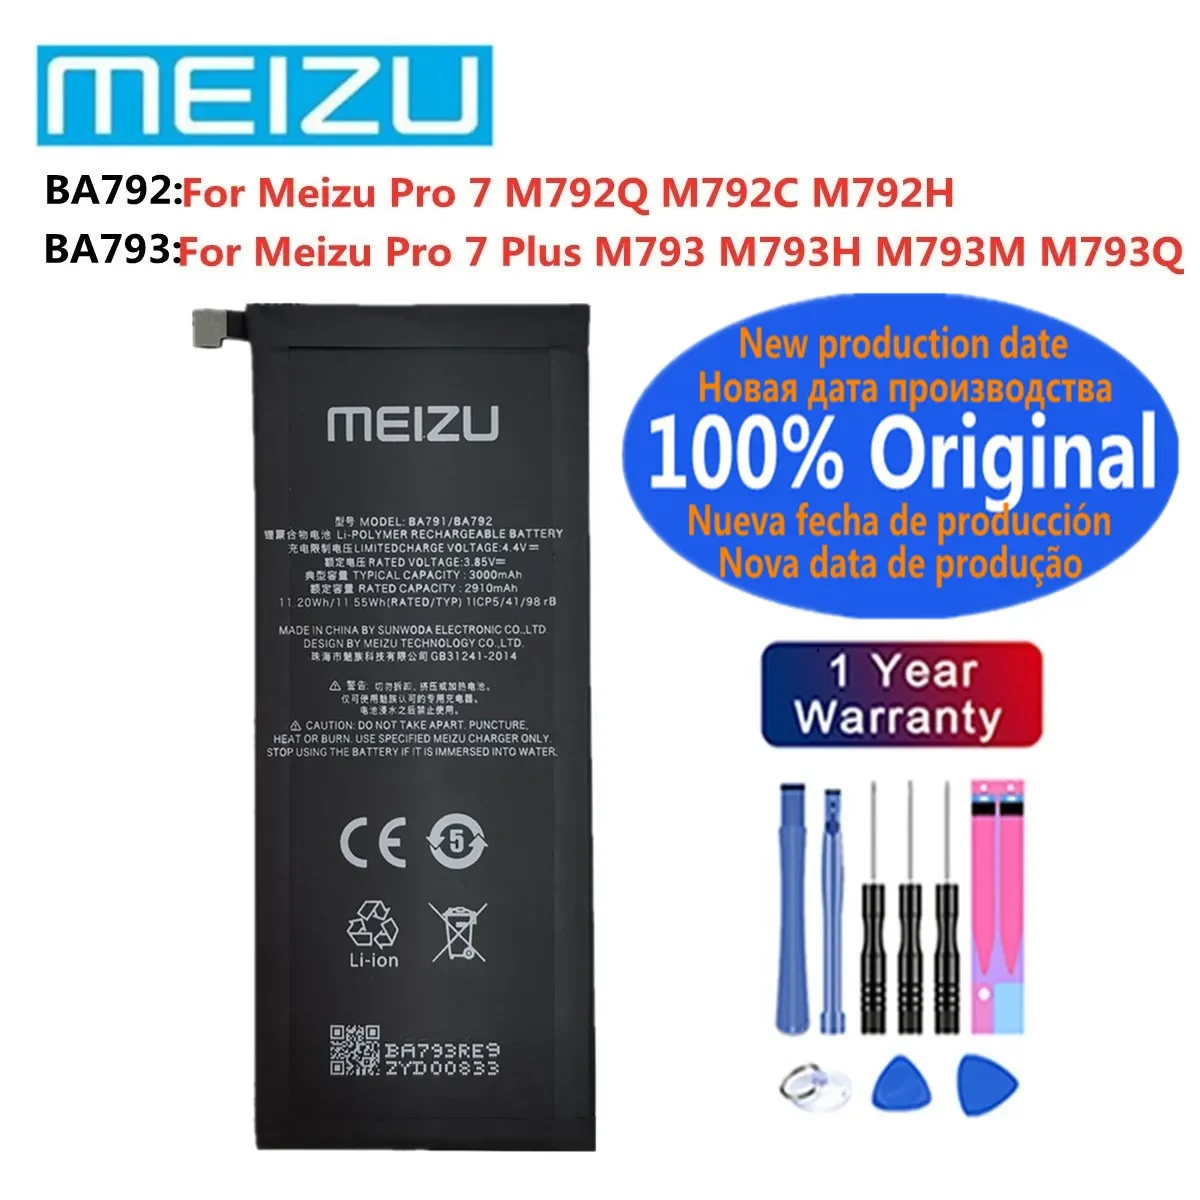 

BA793 BA792 100% Оригинальный аккумулятор для Meizu Pro7 Pro 7 Plus M793Q M793M M793H M792H M792Q M792C мобильный телефон аккумулятор